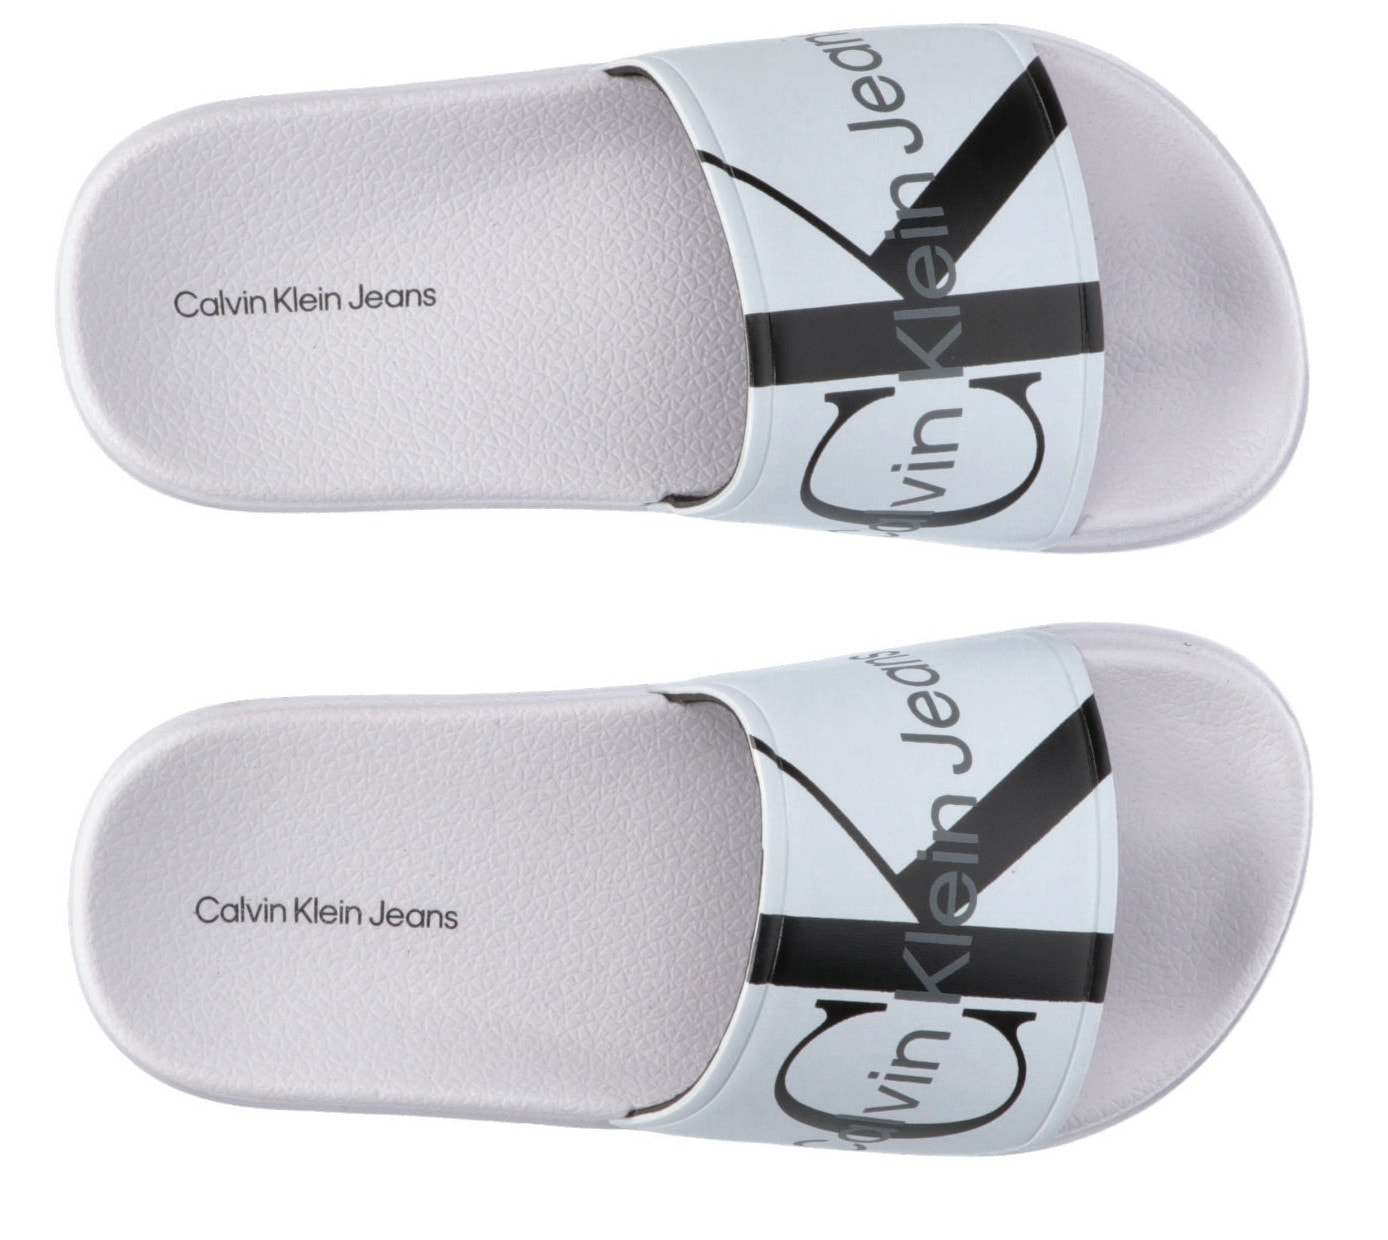 Calvin Klein Jeans Badepantolette »LOGO POOL SLIDE«, Sommerschuh, Schlappen, Badeschuh, Poolslides mit großem Logodruck